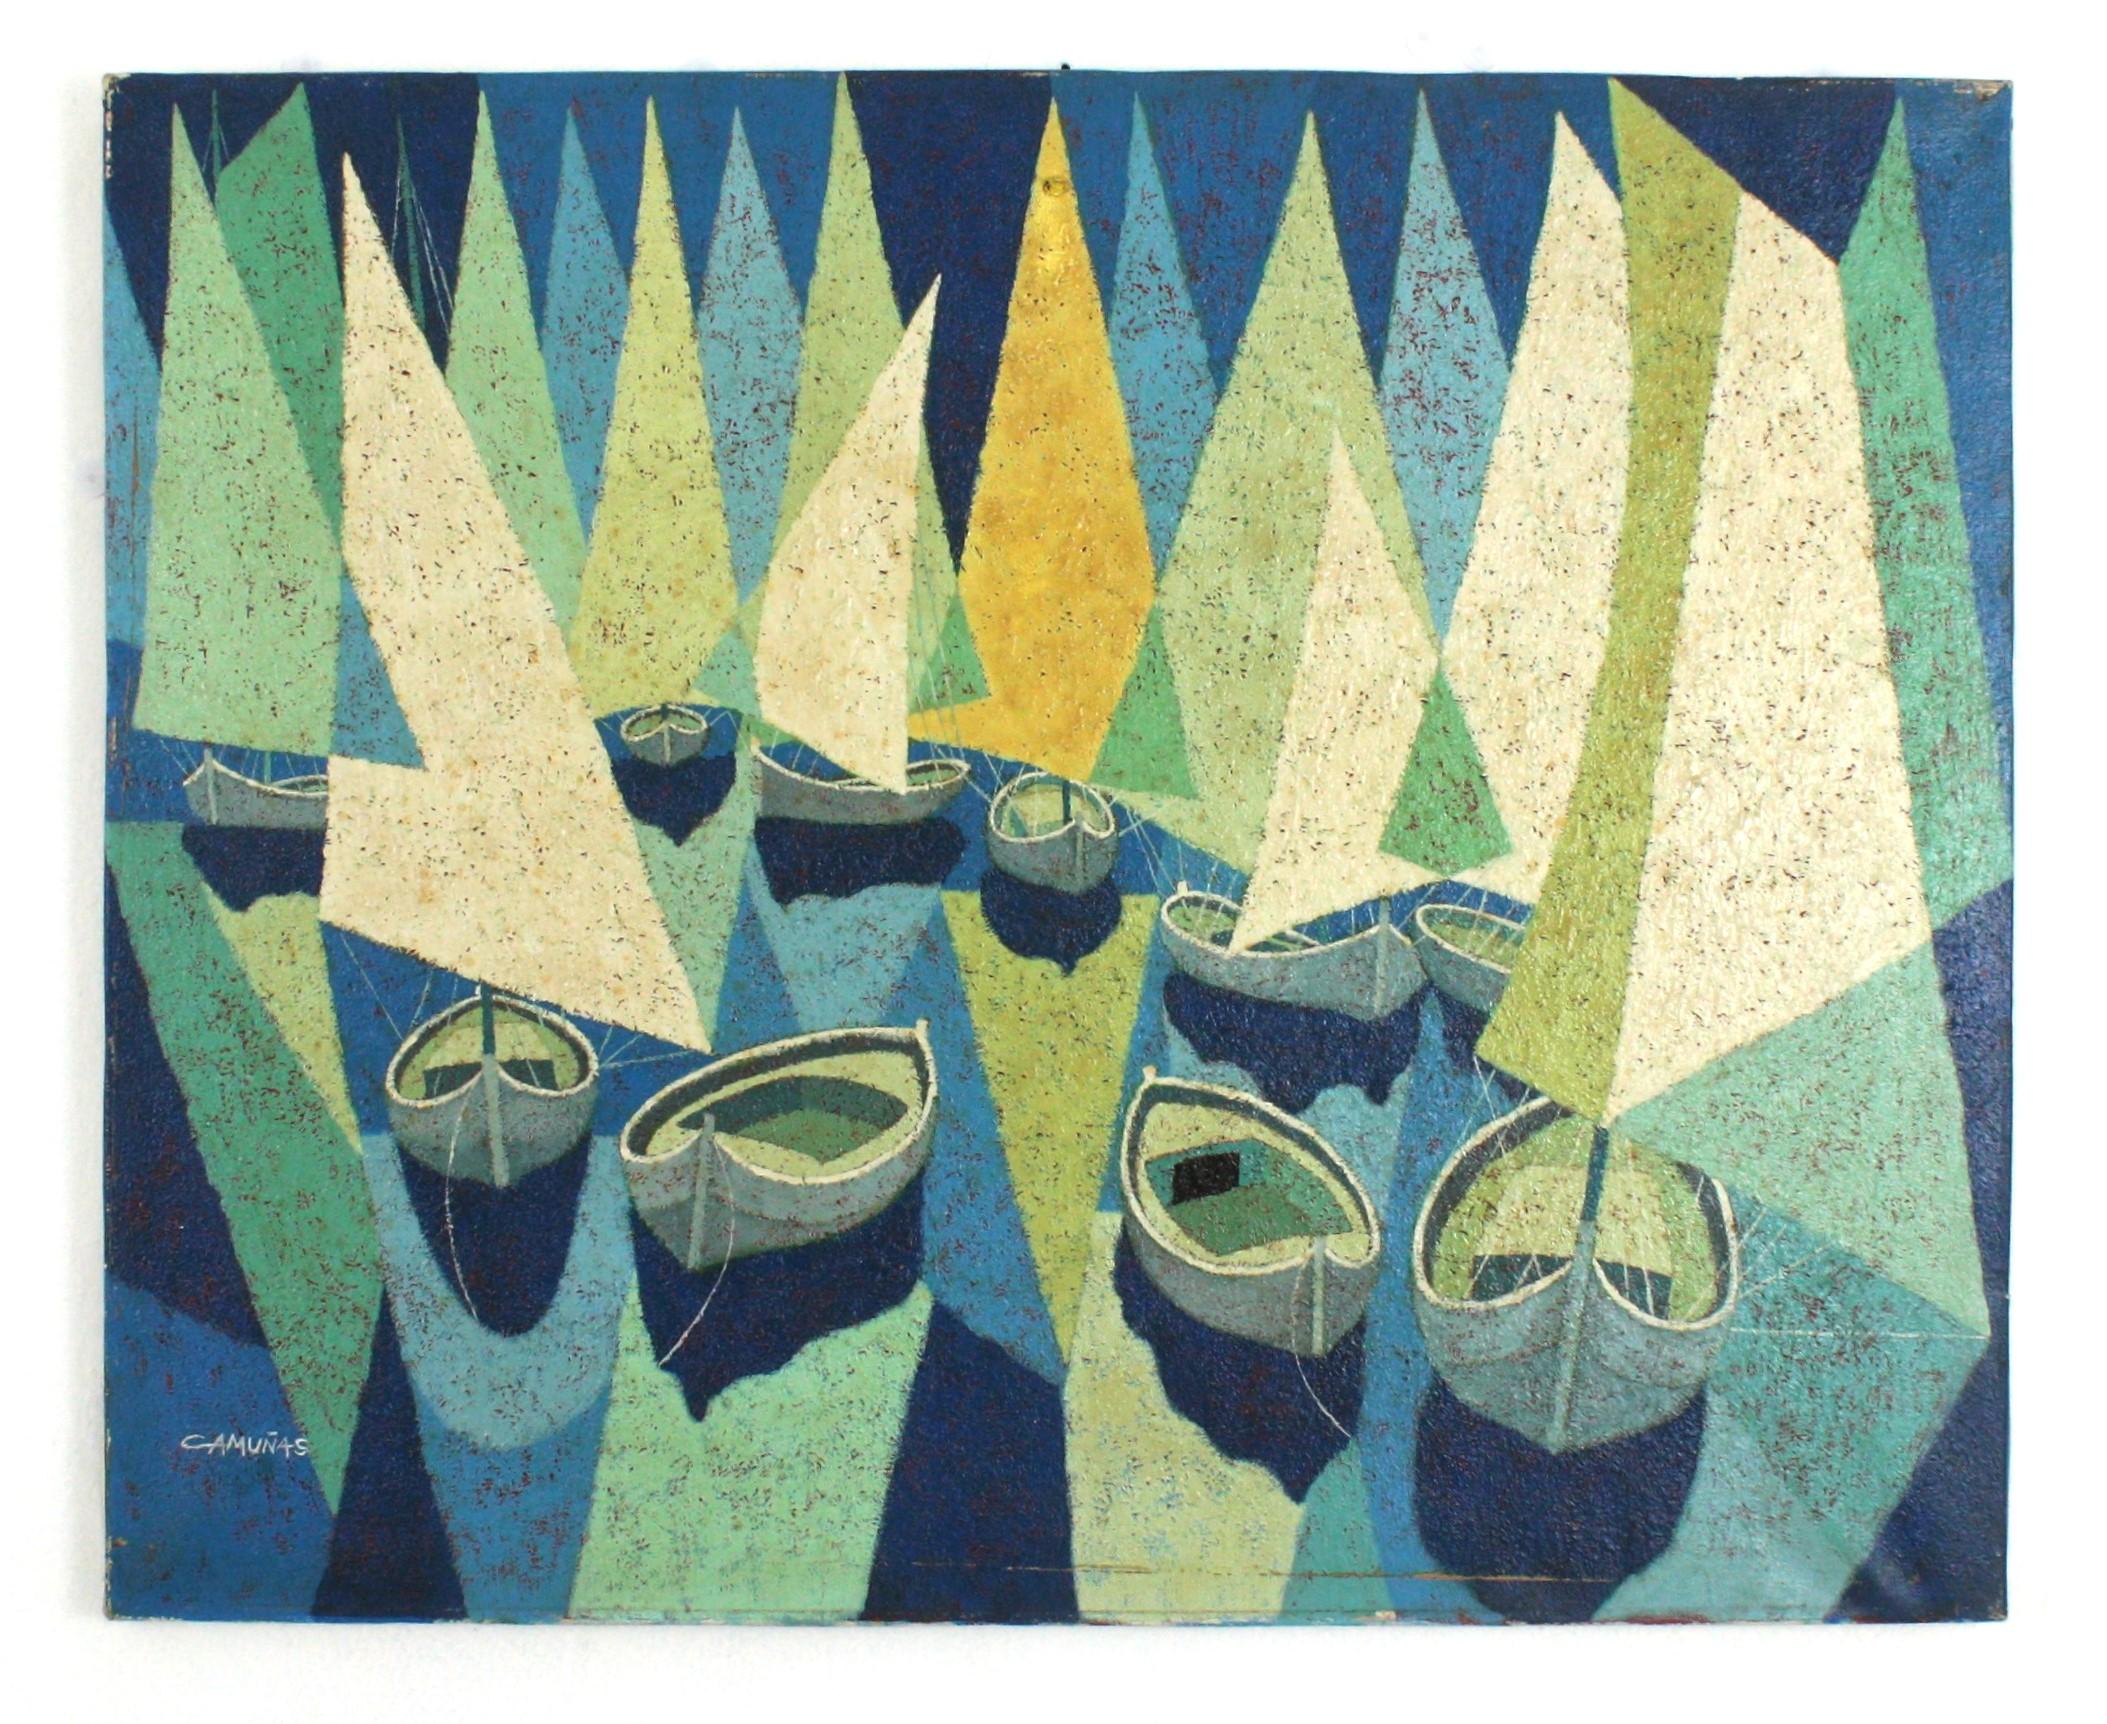 Bateaux à voile Huile espagnole sur toile, années 1940-1950
Nuances de bleu, de vert, de beige et de blanc cassé
Huile sur toile, non encadrée
Signé 